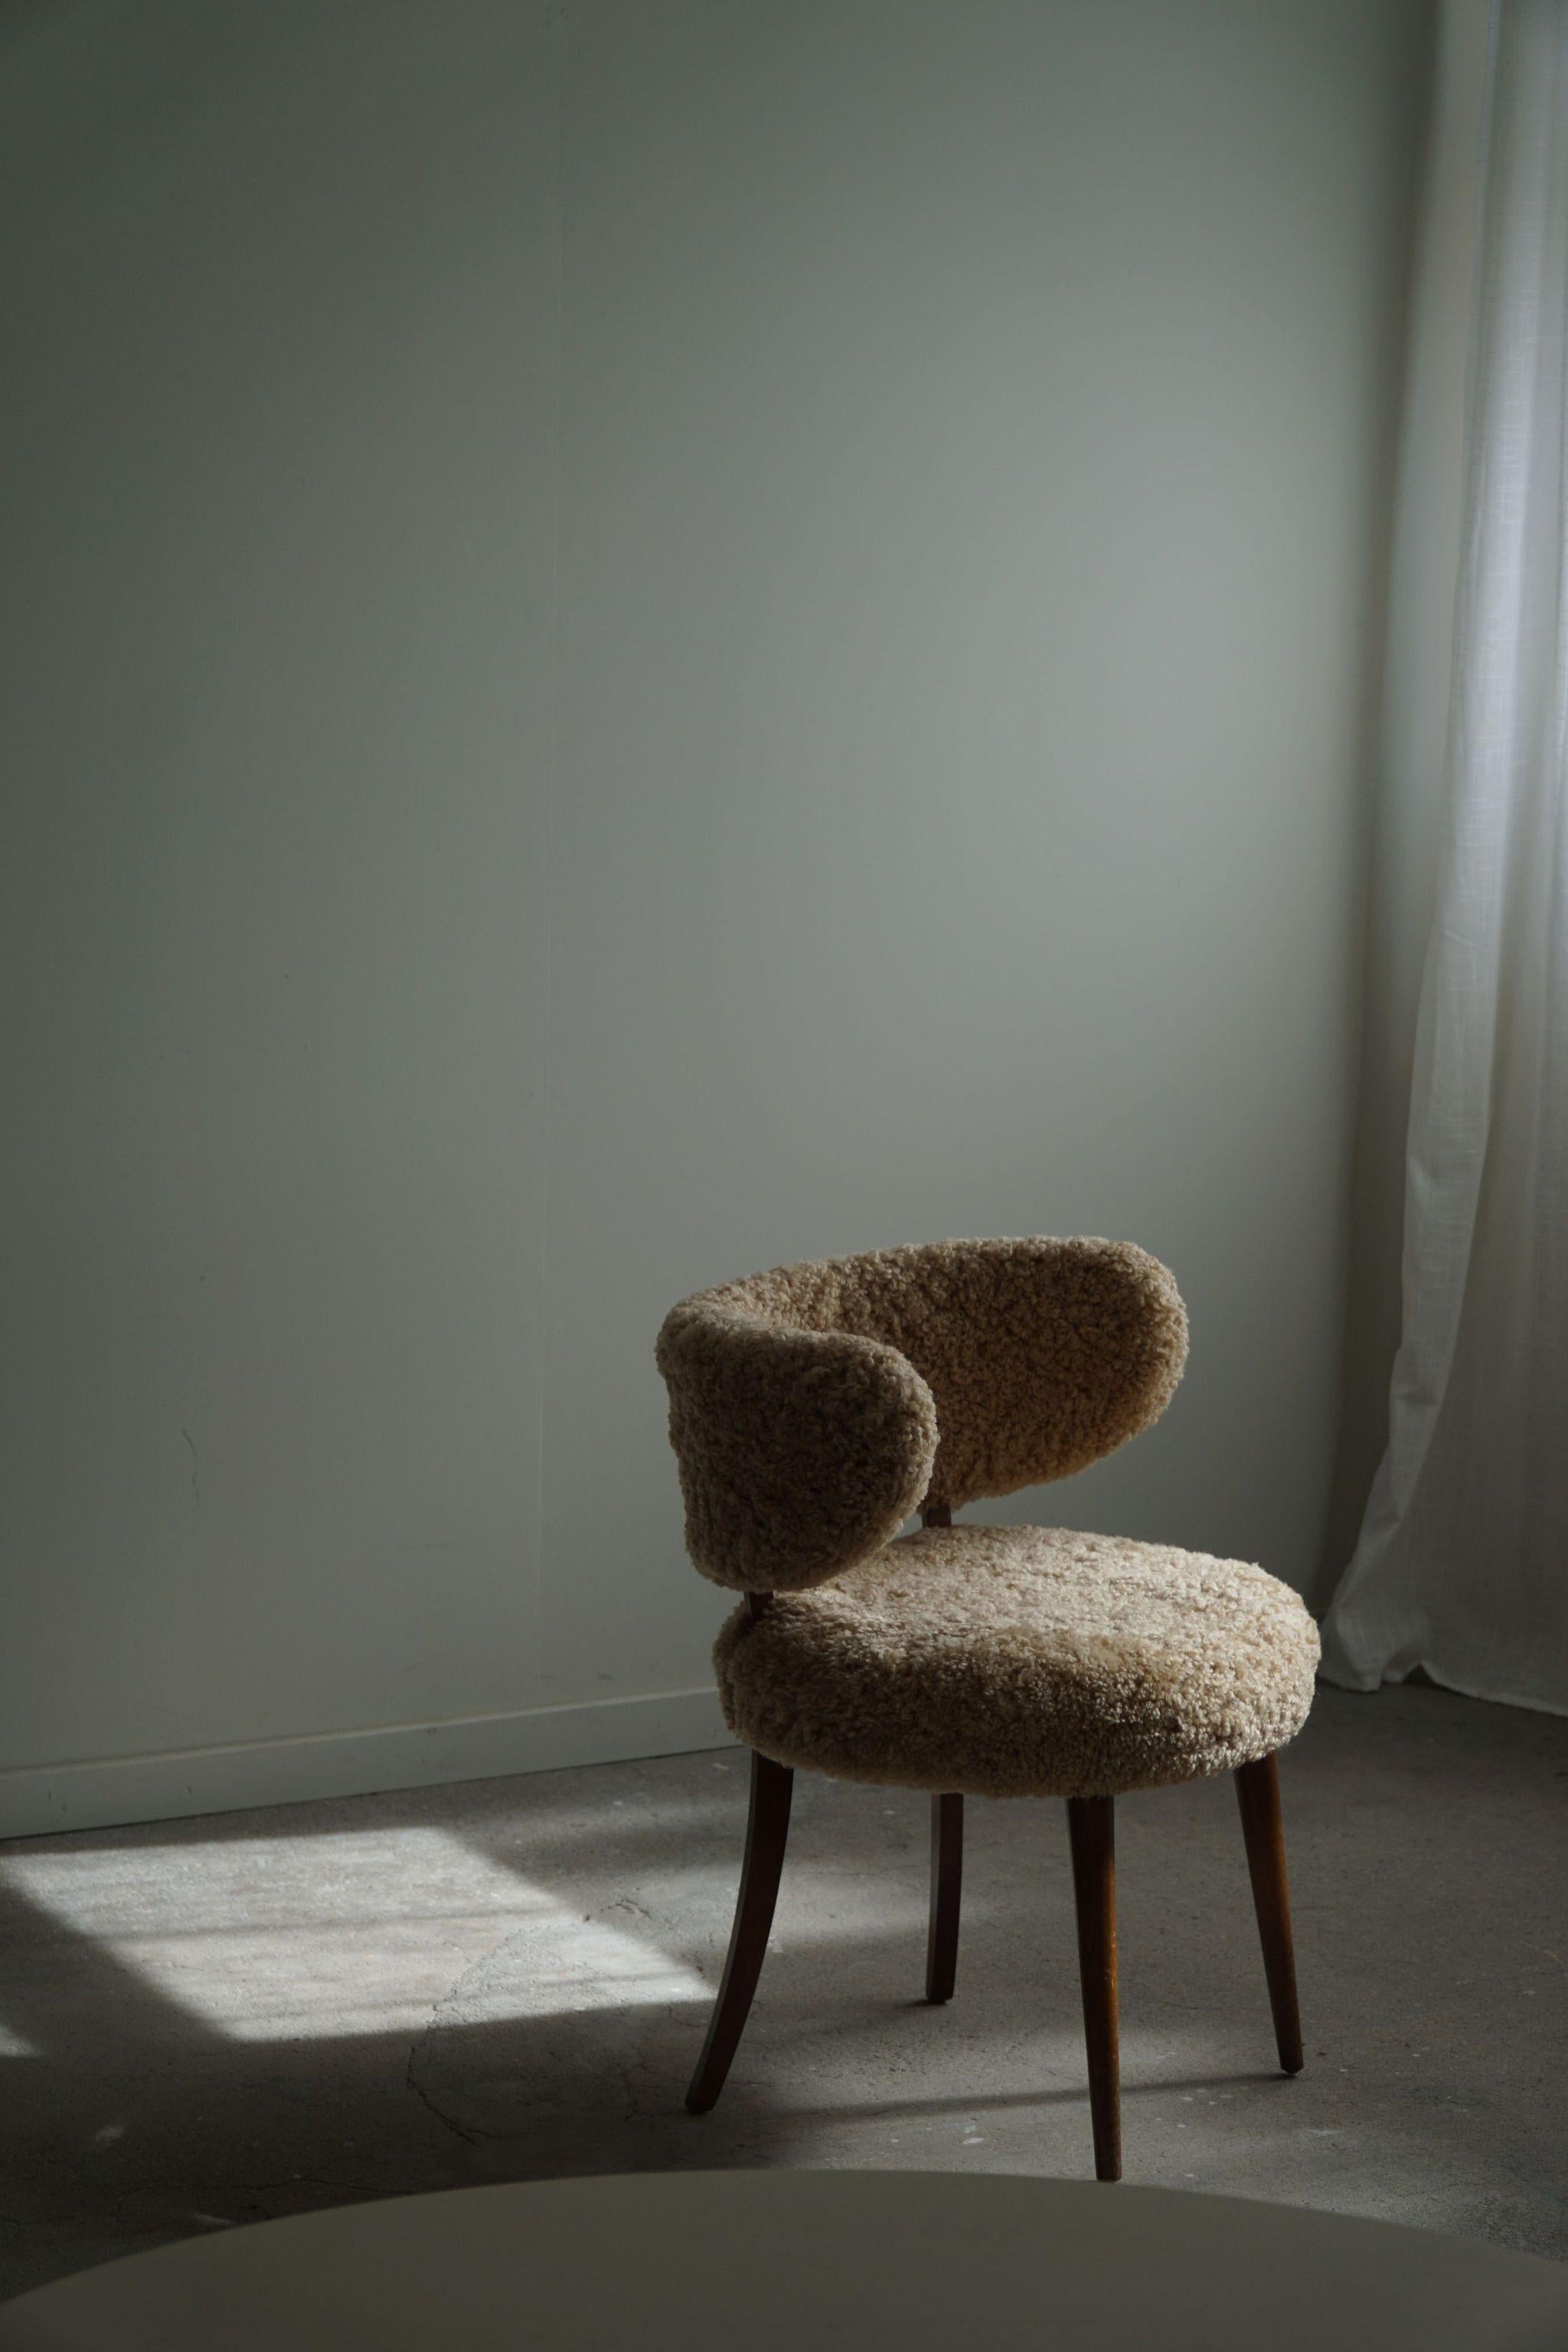 Nous vous présentons une exquise chaise de bureau à dossier bas, fabriquée dans les années 1940 par un ébéniste danois talentueux. Cette chaise est une combinaison harmonieuse de sophistication, de fonctionnalité et d'esthétique intemporelle,